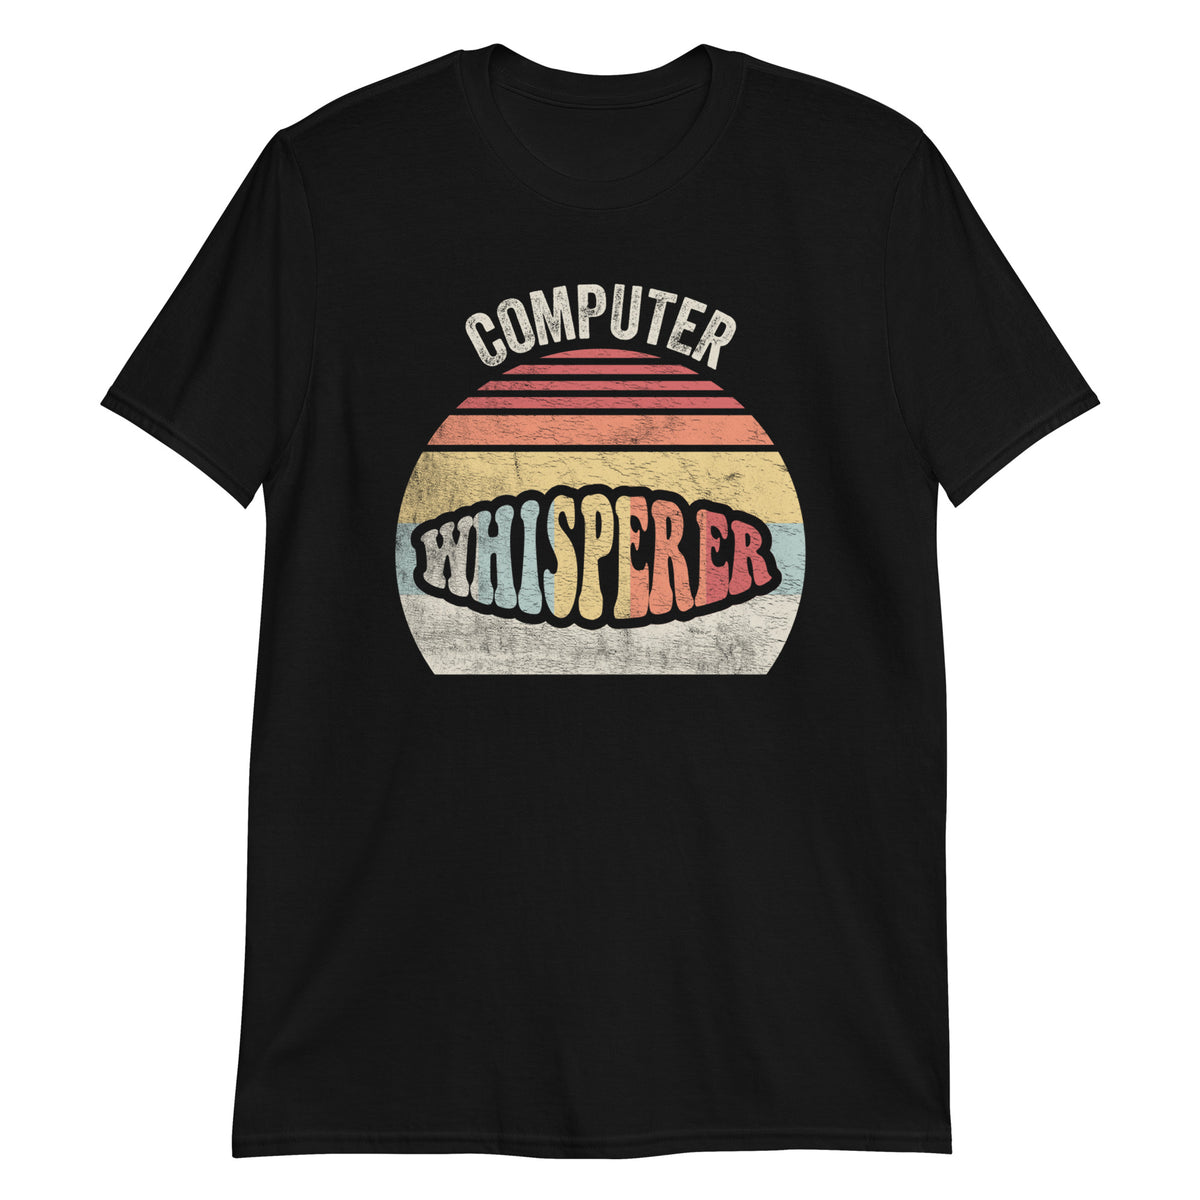 Whisperer Computer T-Shirt